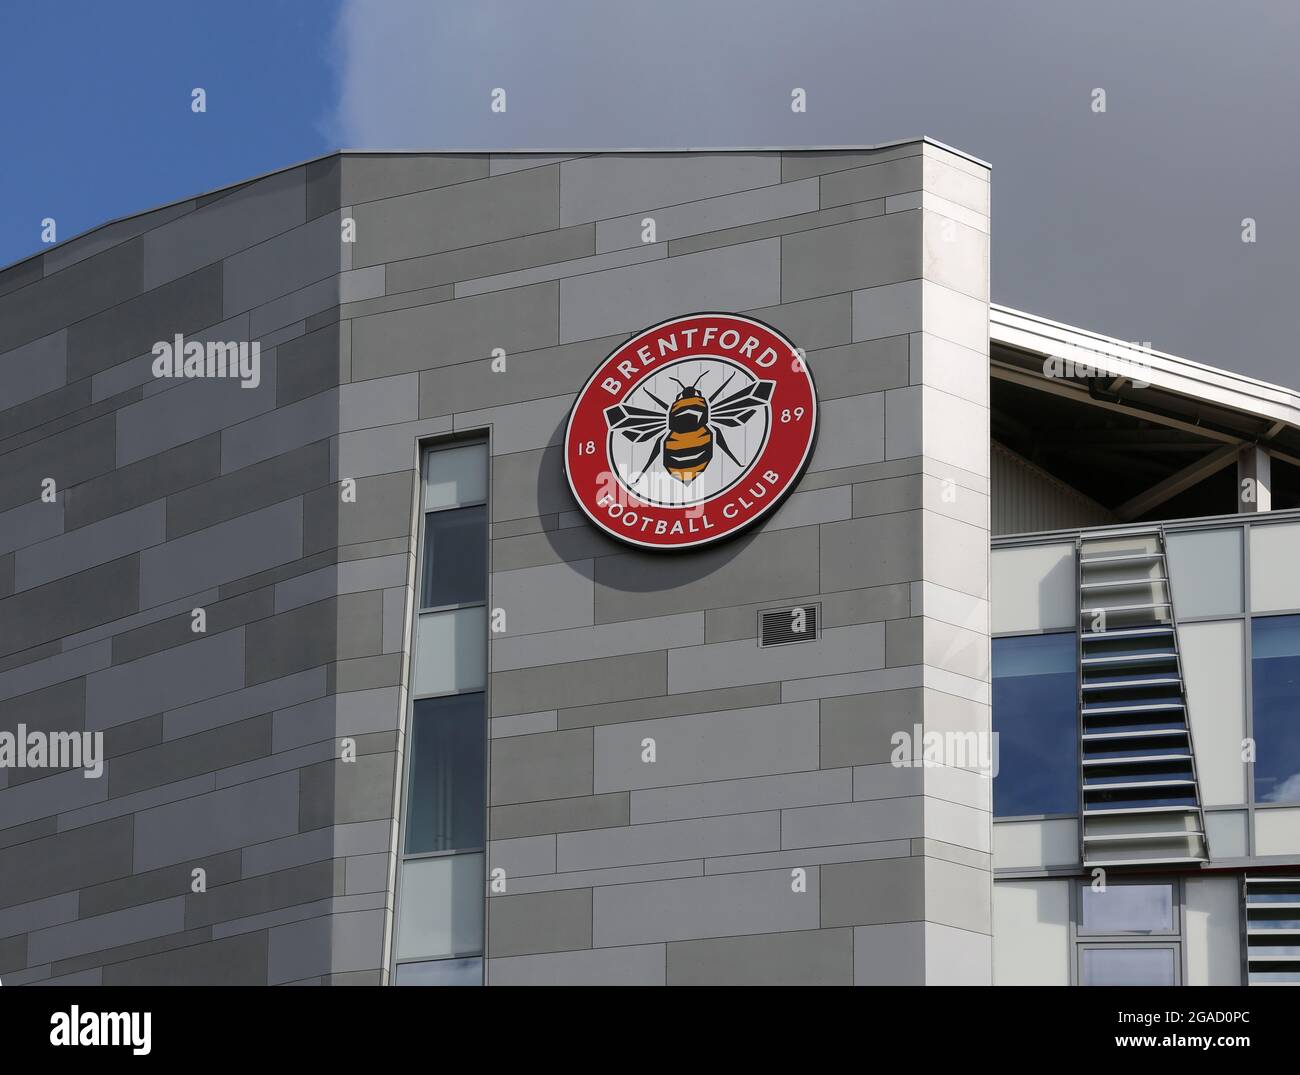 Détail du nouveau stade du club de football de Brentford à West London, Royaume-Uni montrant le logo de l'abeille club. Accueille également le London Irish Rugby Club. Banque D'Images